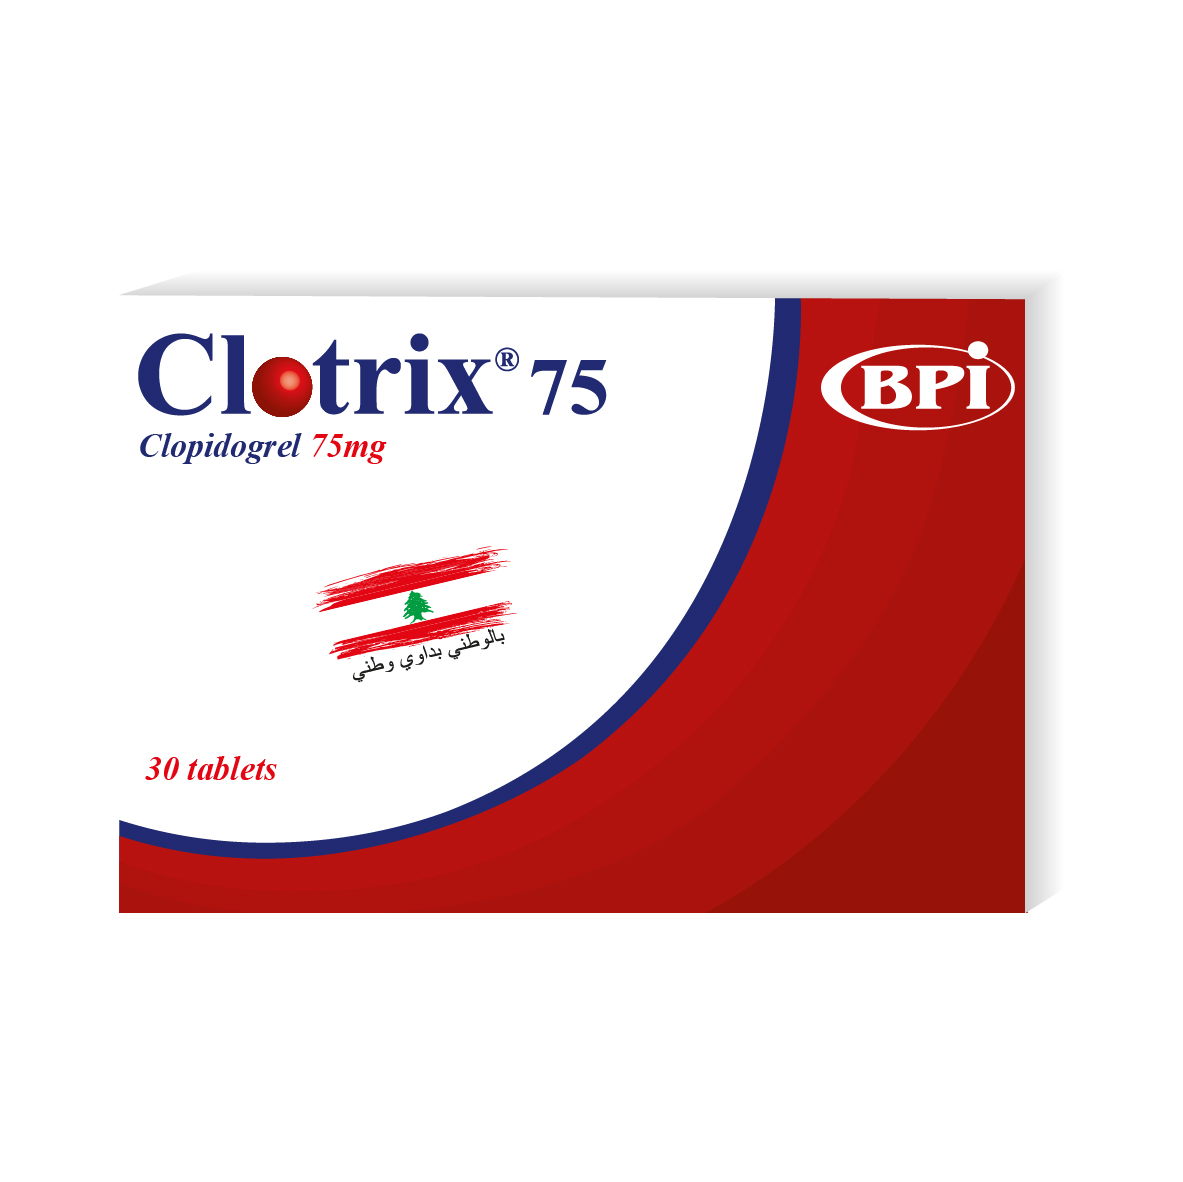 Clotrix 75